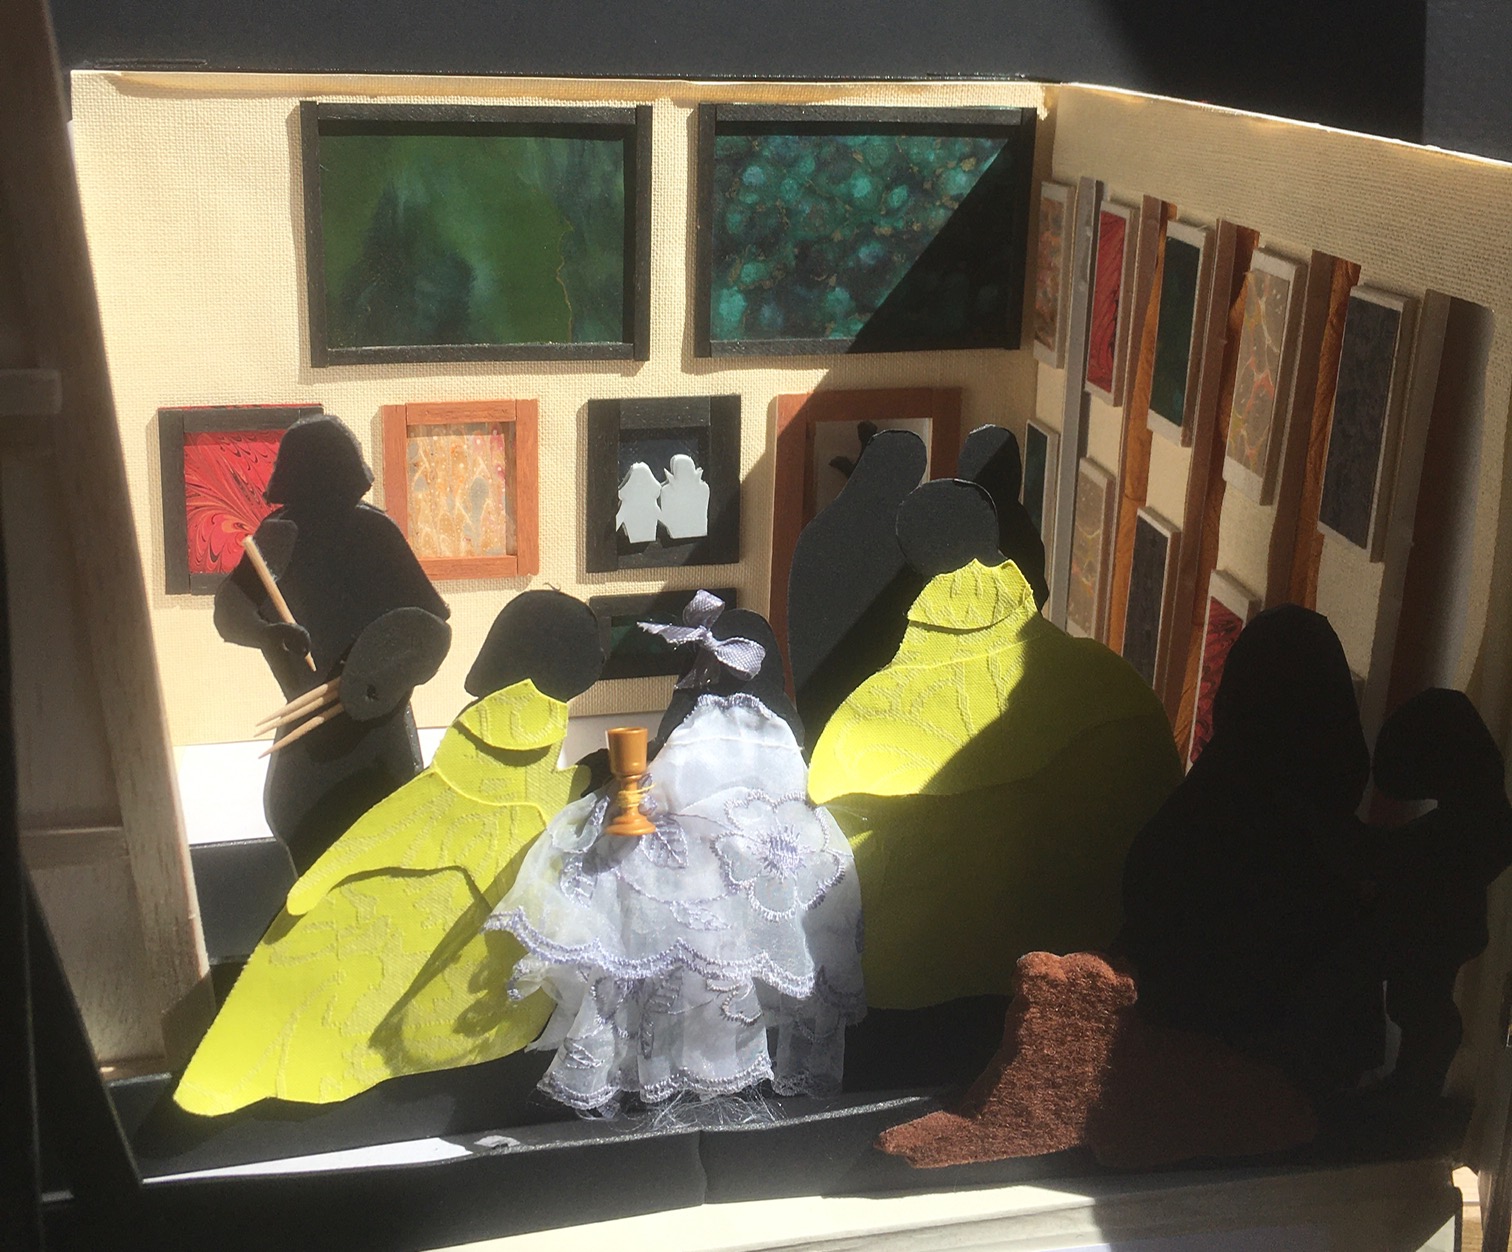 DIEGO VÉLASQUEZ Les Ménines Petit théâtre – diorama texturé avec bascule en 2D texturée de papier à reliure, balsa, tissus, feutrine. Année réalisation de l’interprétation tactile : 2016.